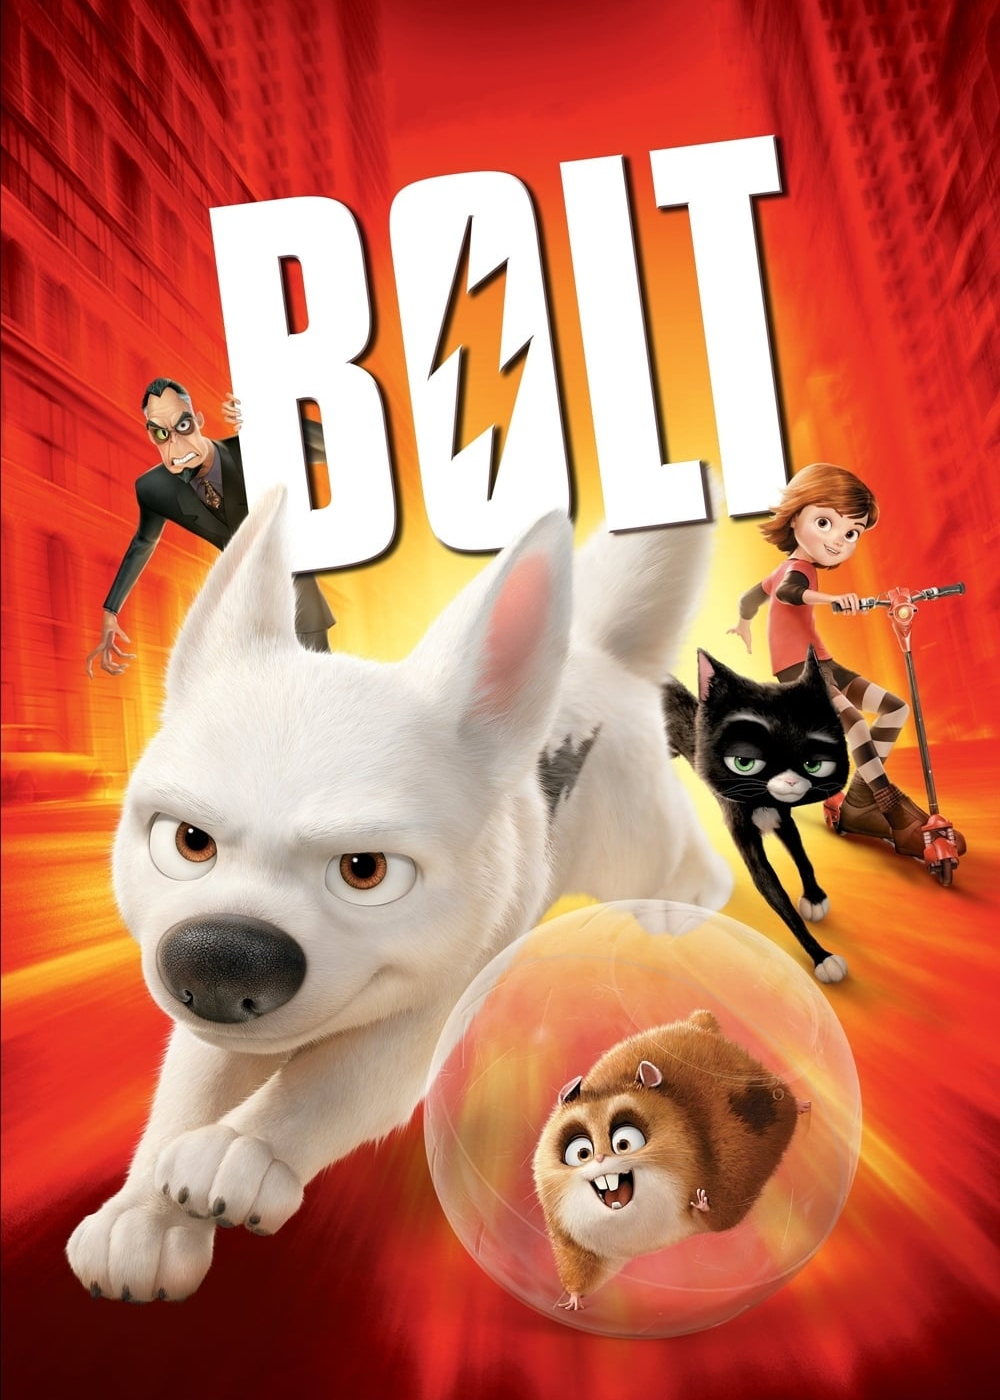 Poster Phim Chú Chó Tia Chớp (Bolt)